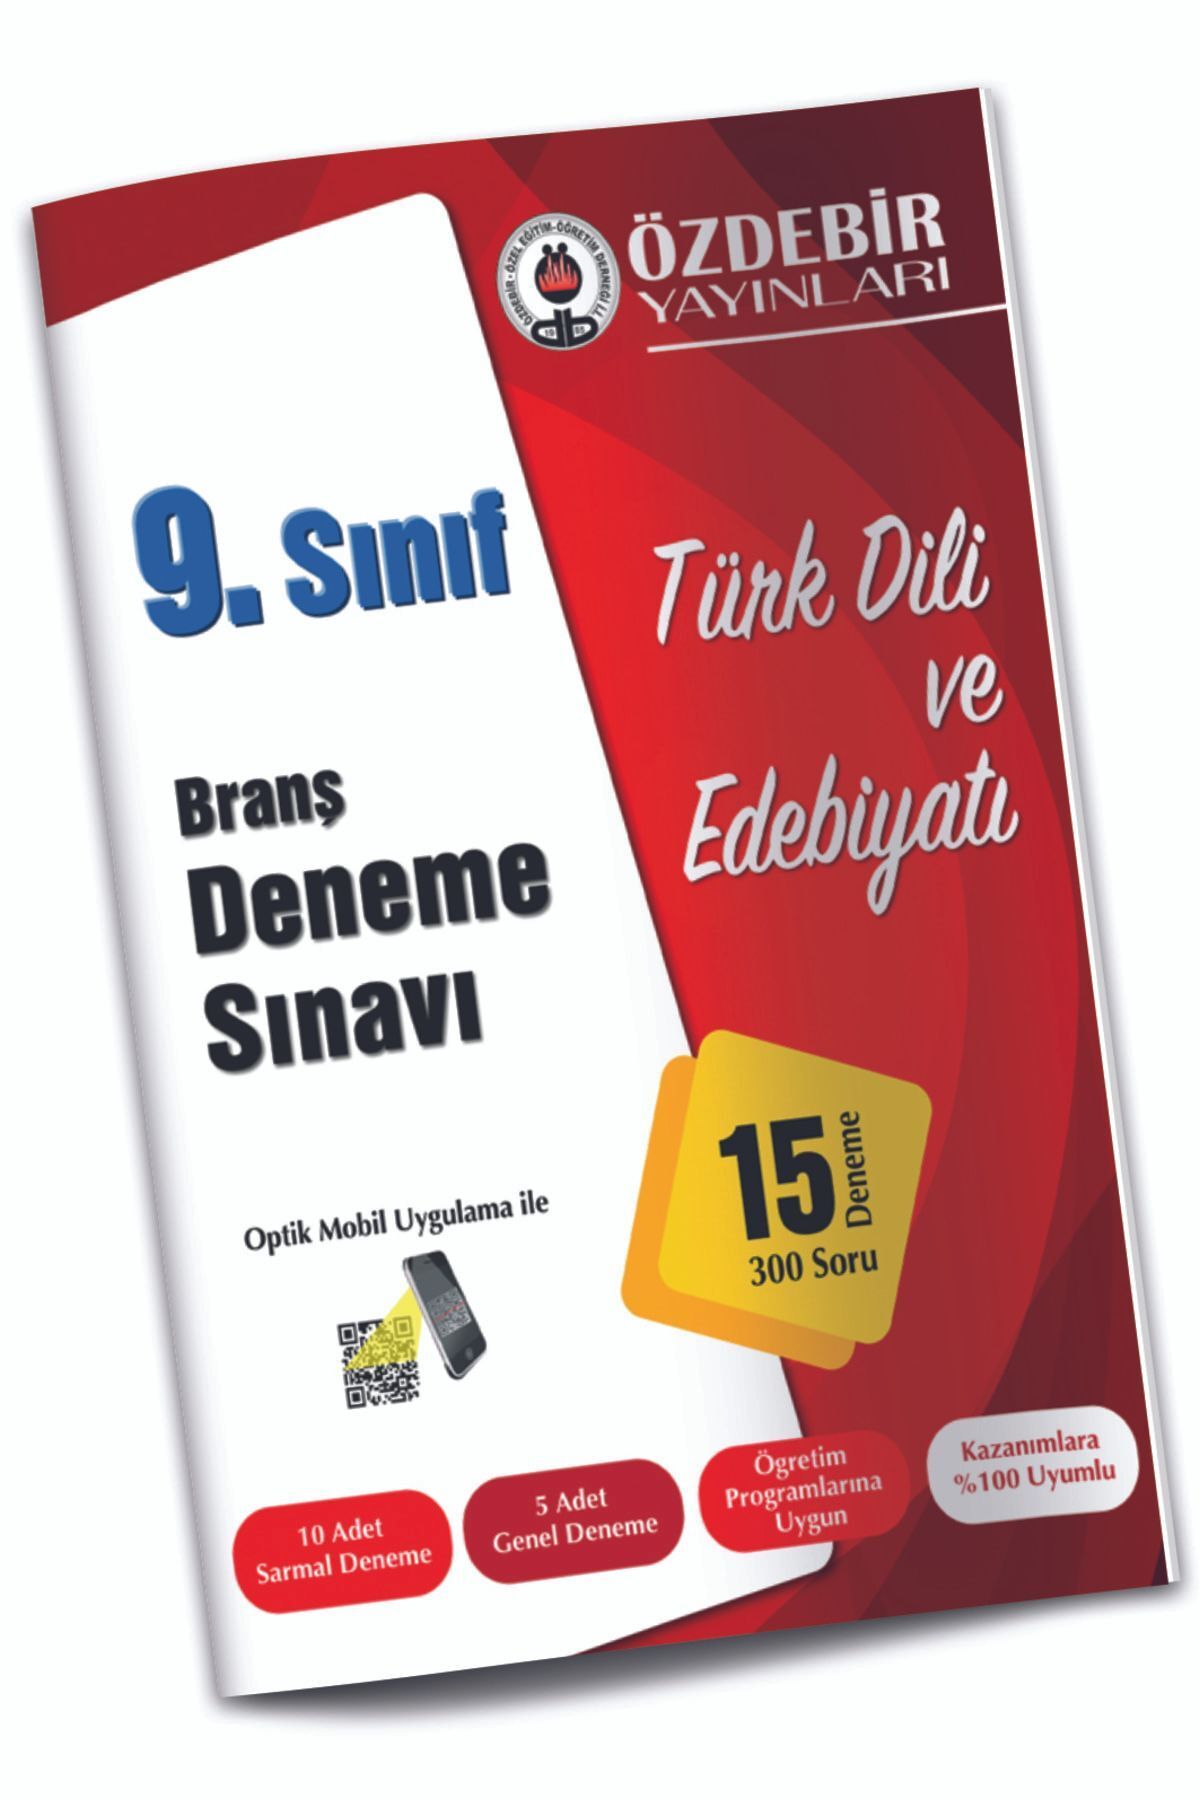 ÖZDEBİR YAYINEVİ Özdebir 9. Sınıf Türk Dili Edebiyatı Branş Deneme